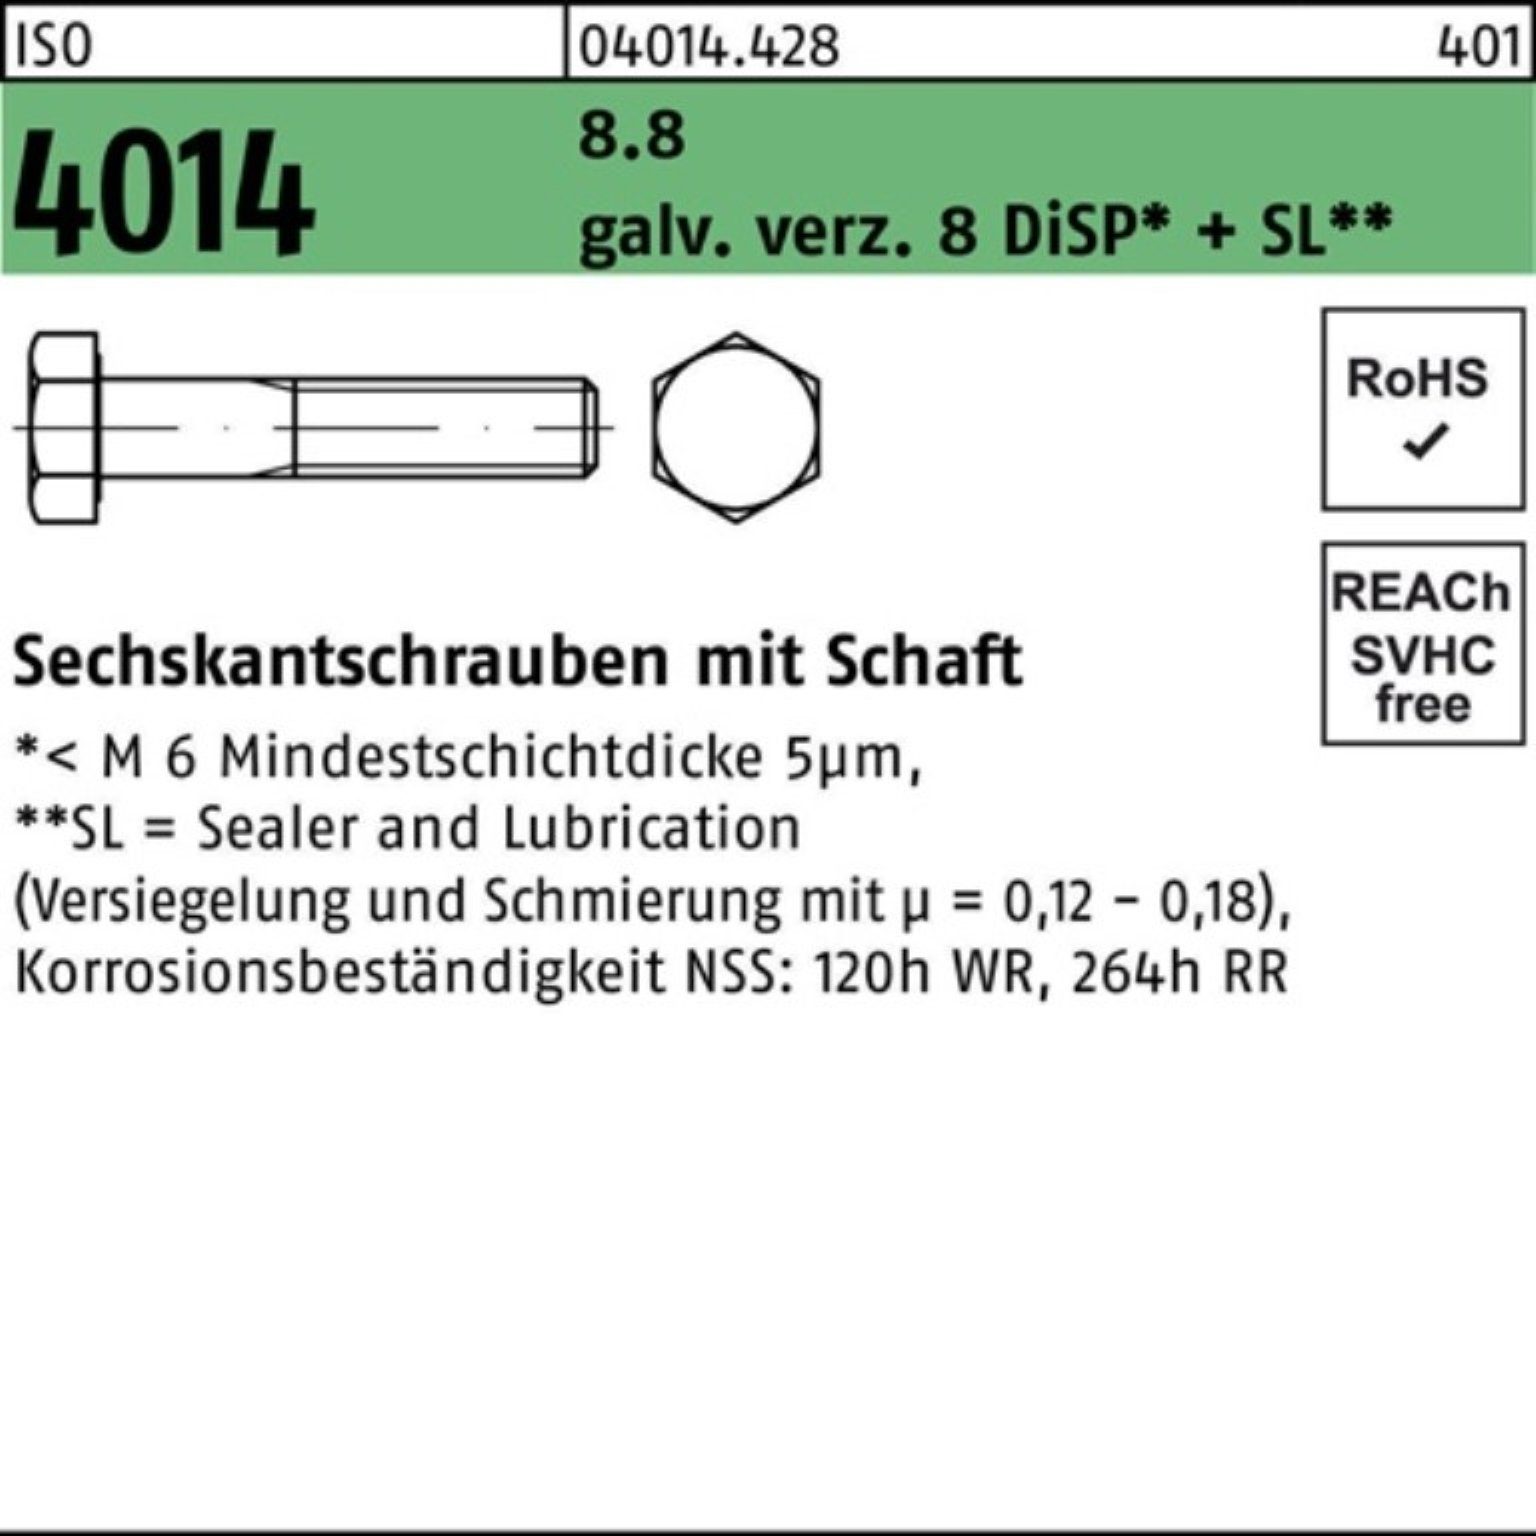 Sechskantschraube ISO Bufab 4014 galv.verz. 100er 8 Sechskantschraube 8.8 Pack Schaft M20x110